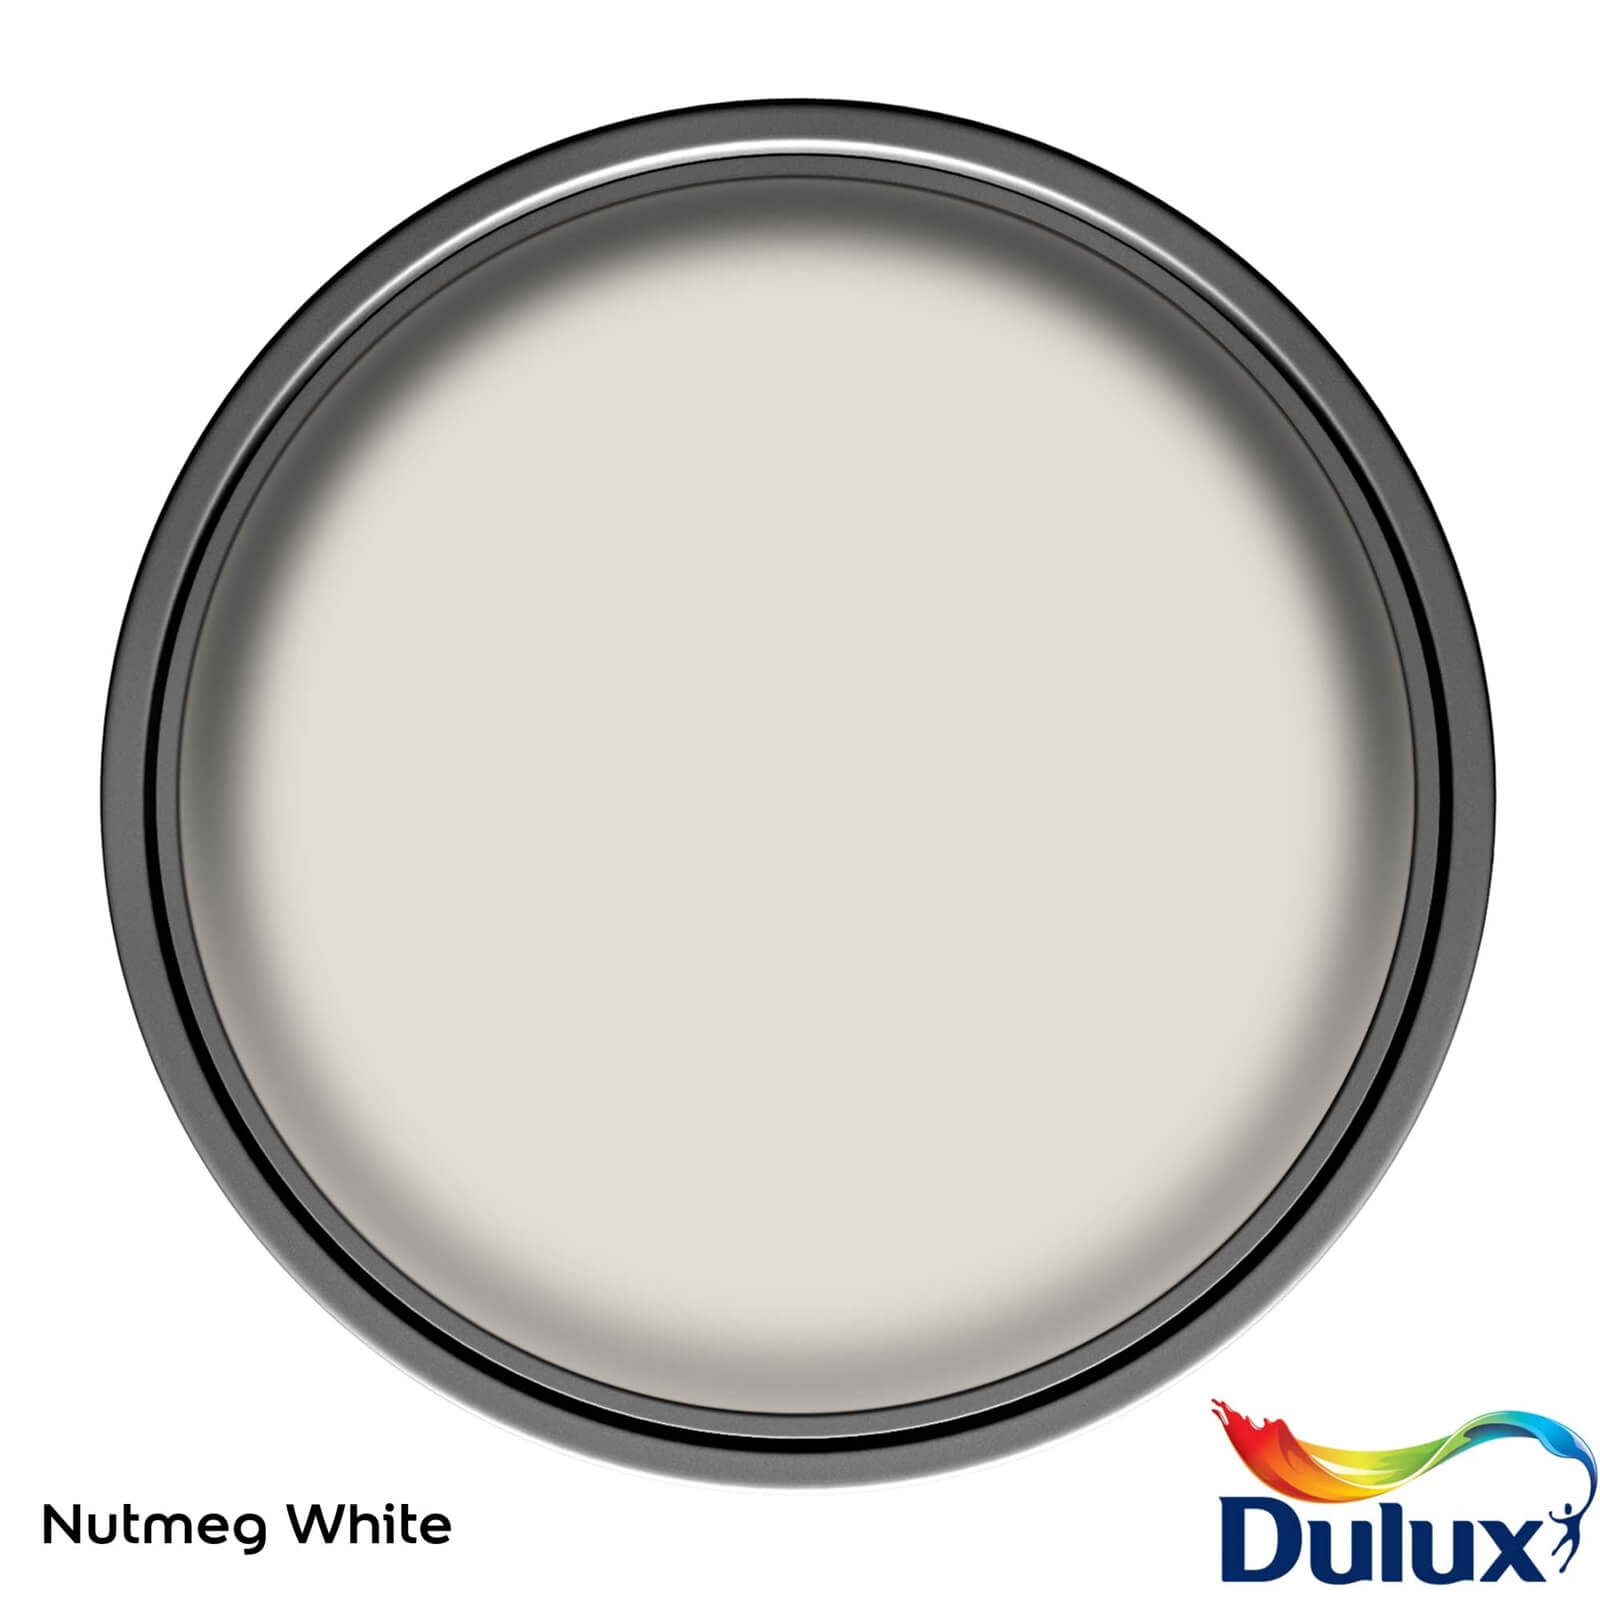 Dulux Easycare Washable & Tough Matt Paint Nutmeg White - 5L